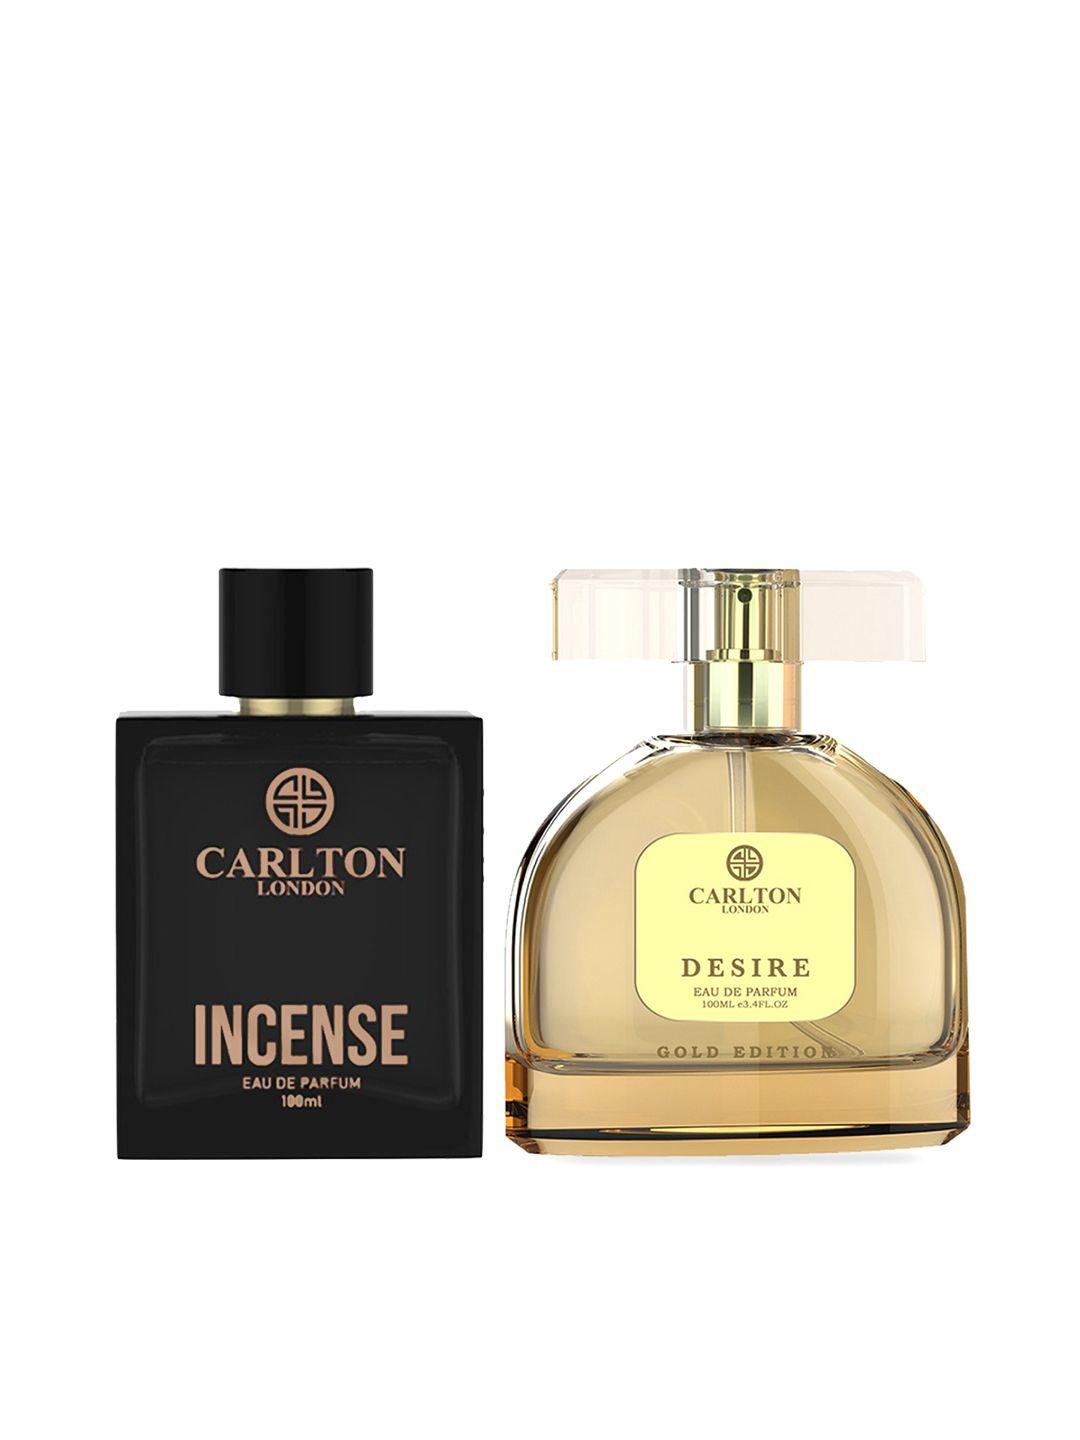 carlton london set of men & women eau de parfums - incense & desire - 100ml each